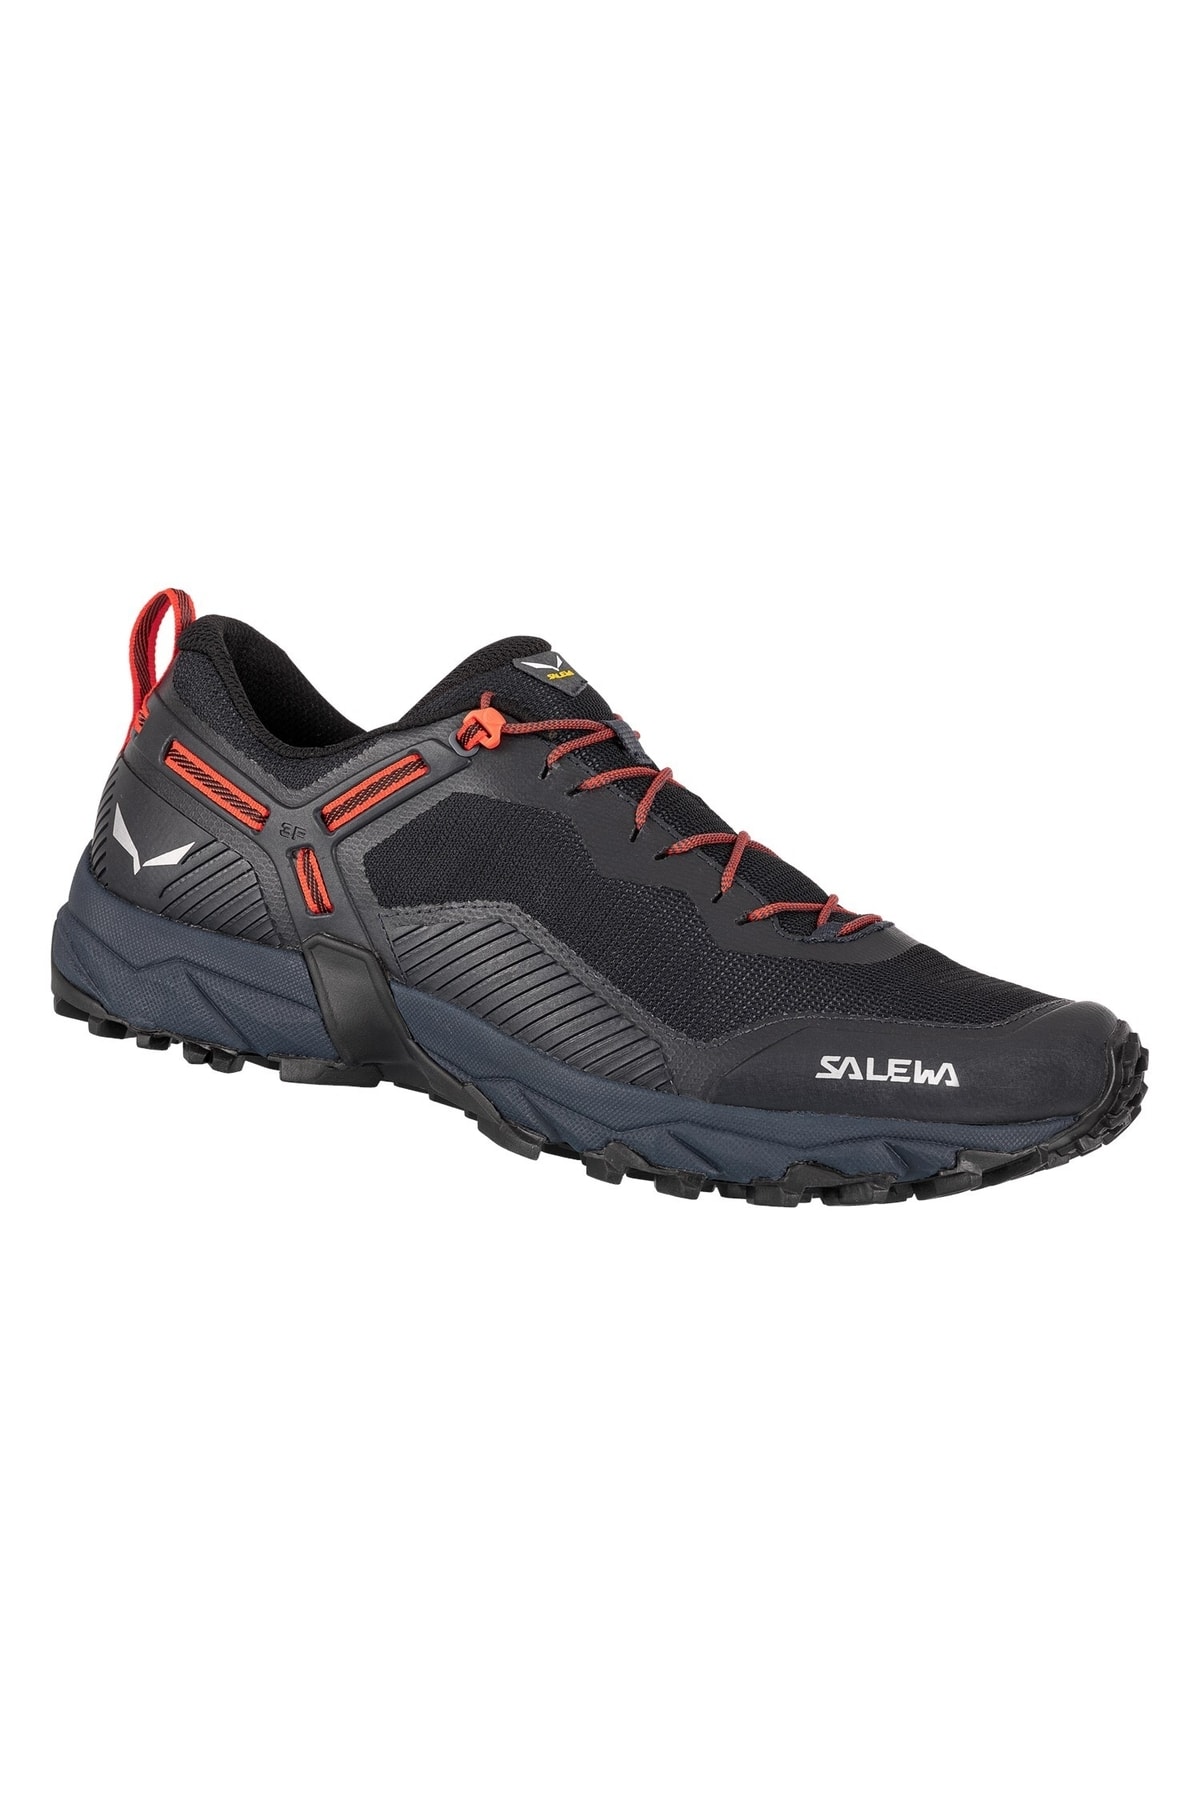 Salewa Ultra Traın 3 Men's Shoe